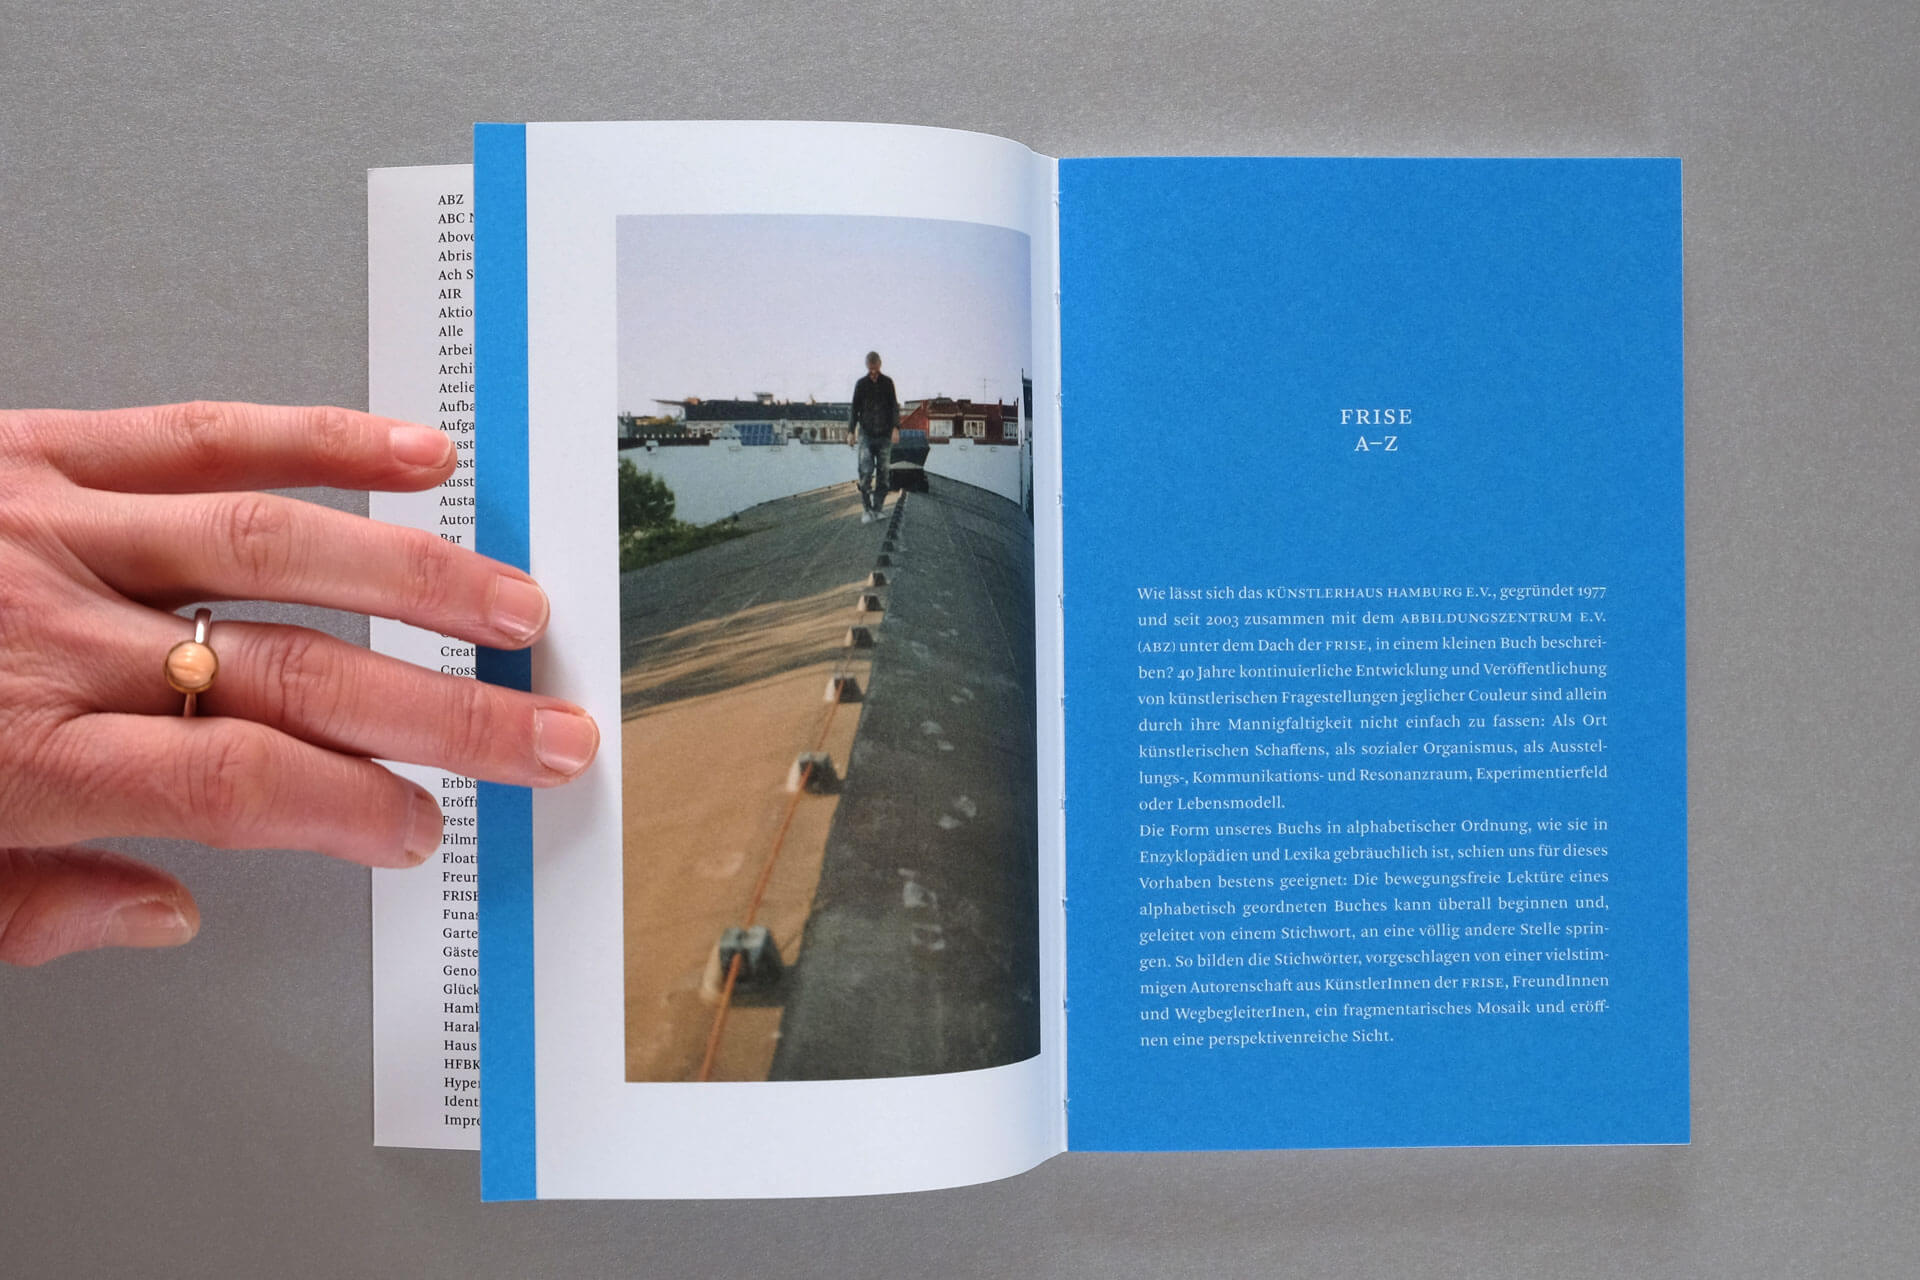 Publikation Frise A–Z. Links: Foto mit Mensch auf Dach. Rechts: Einleitungs-Text in weiß auf blauem Fond